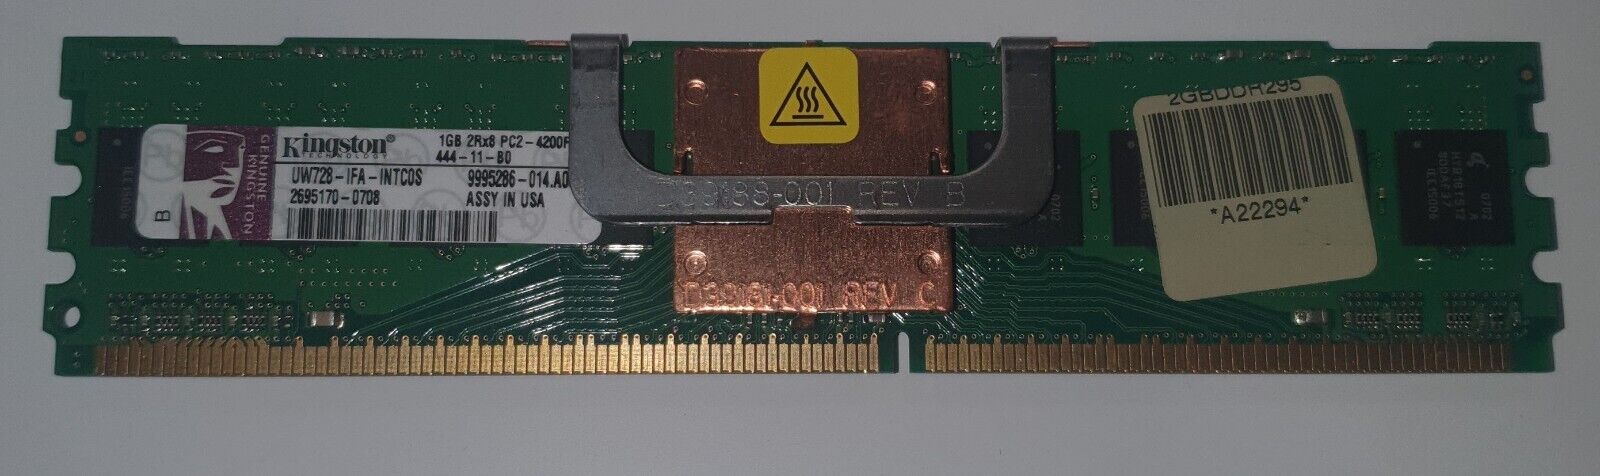 Kingston UW728-IFA-INTCOS 1GB 2Rx8 PC2-4200F Server DIMM Memory Qty 12